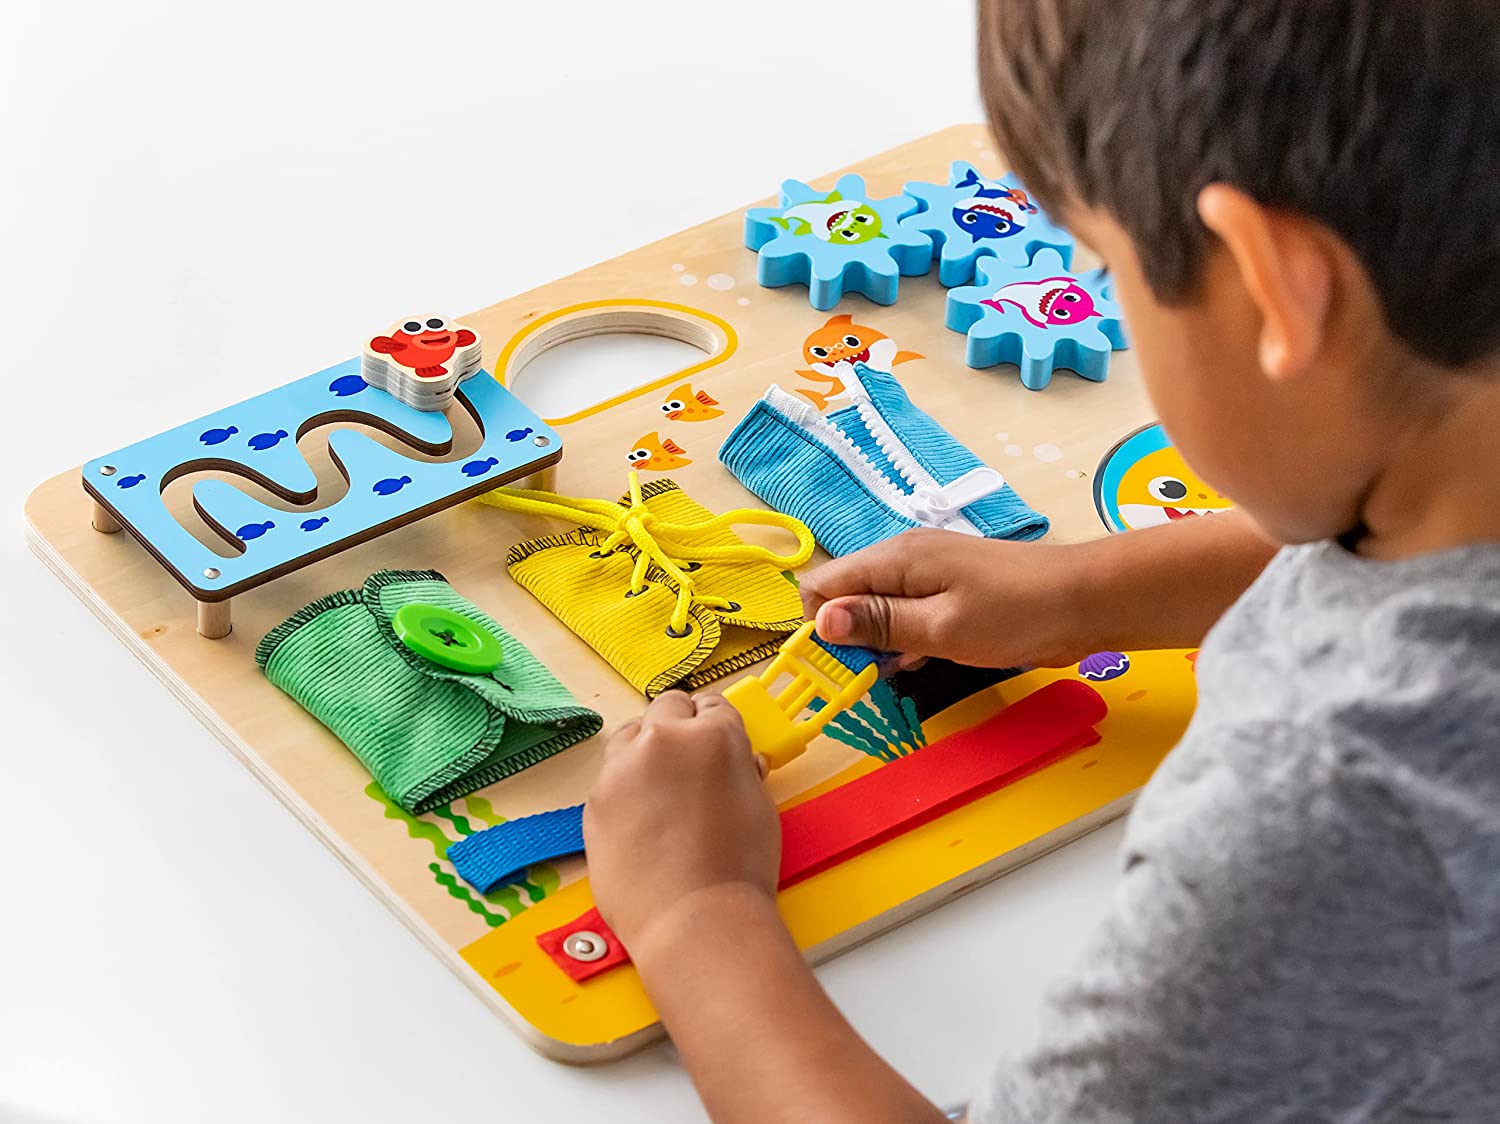 Montessori Busy Board Toy